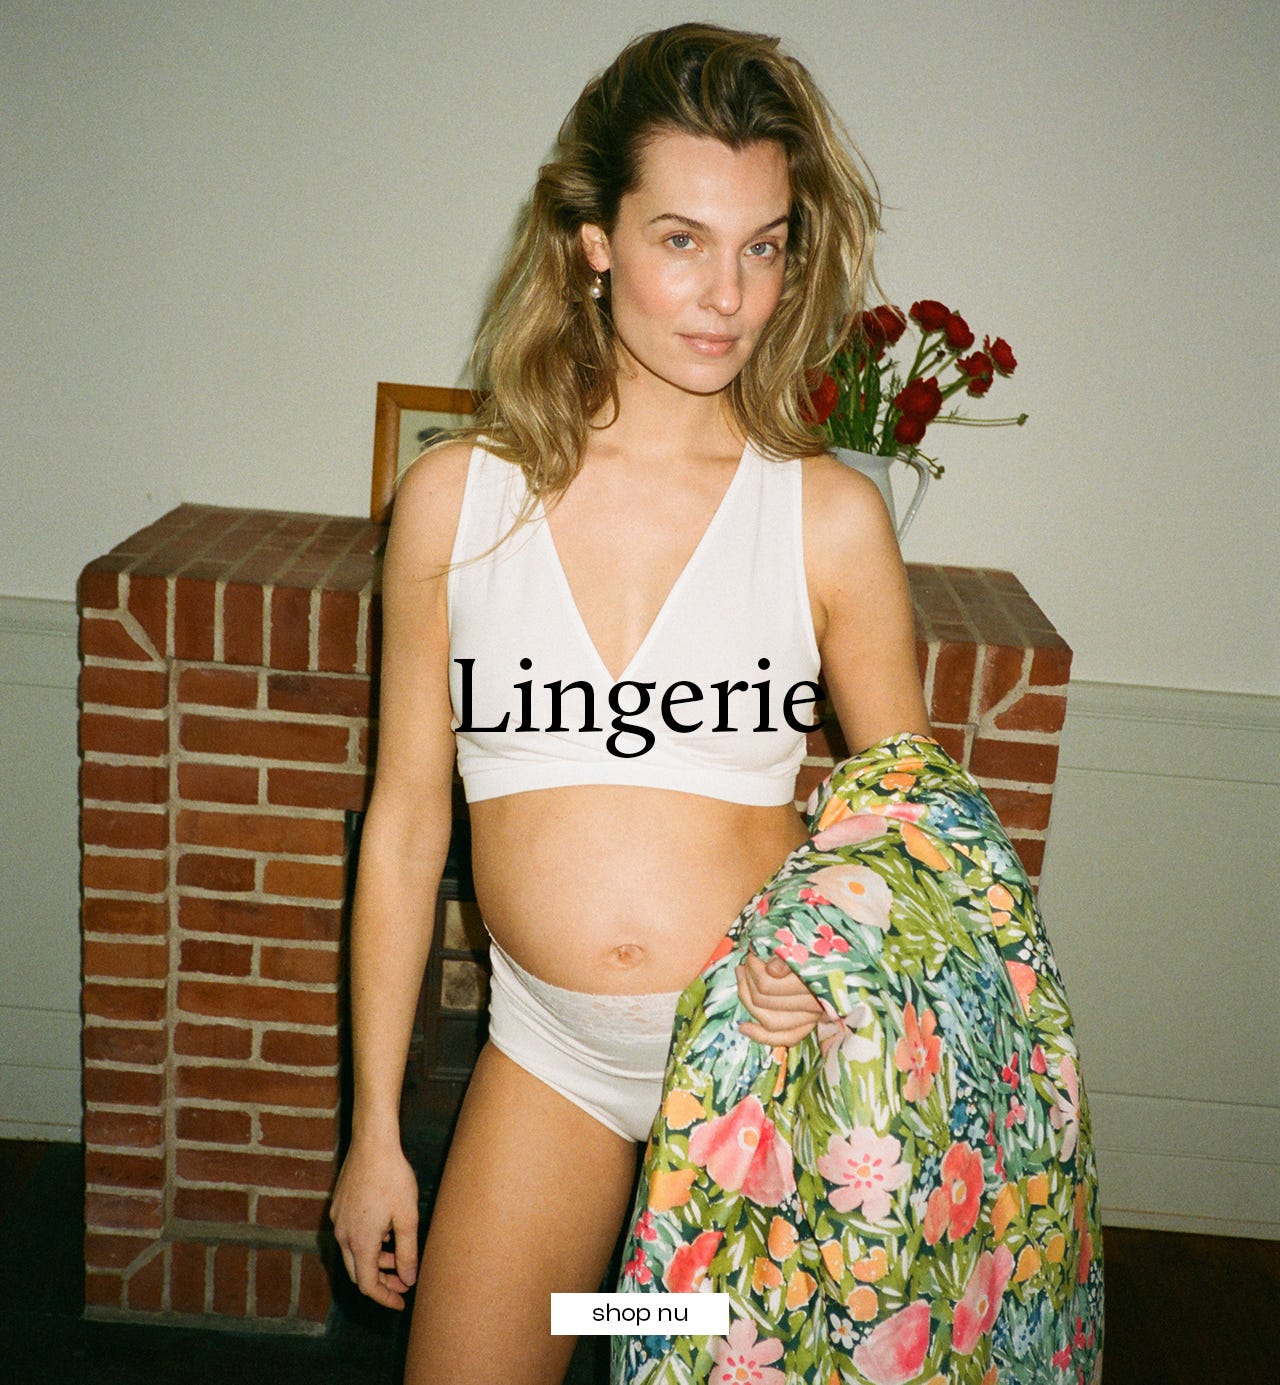 row05_01_lingerie-nl-nl.jpg